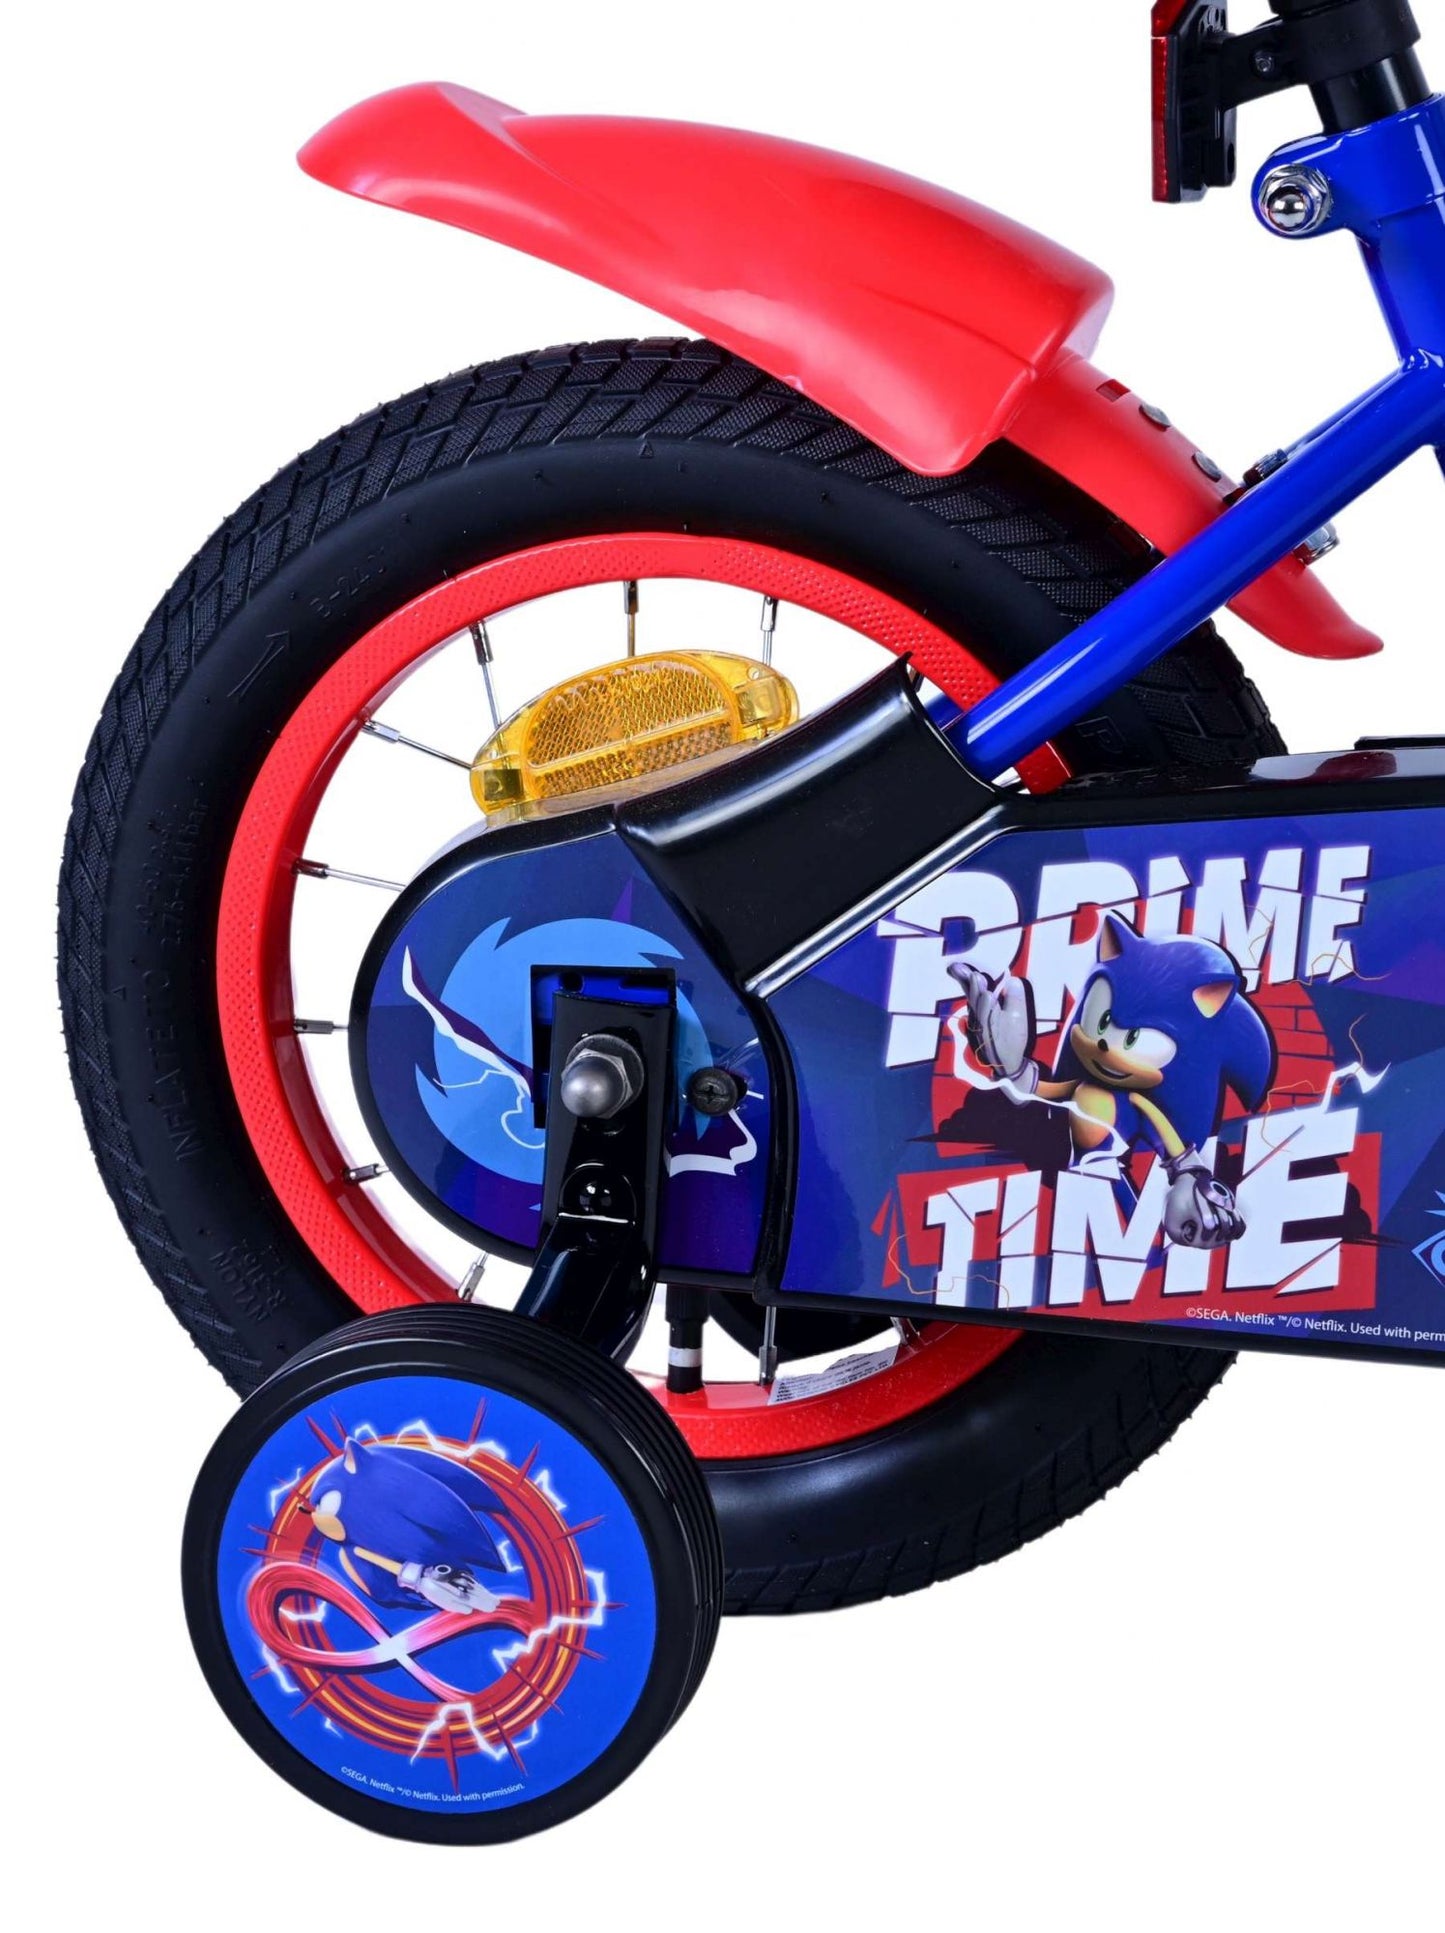 Sonic Prime Prime Kinderfiets Jongens 12 inch Blauw Rood